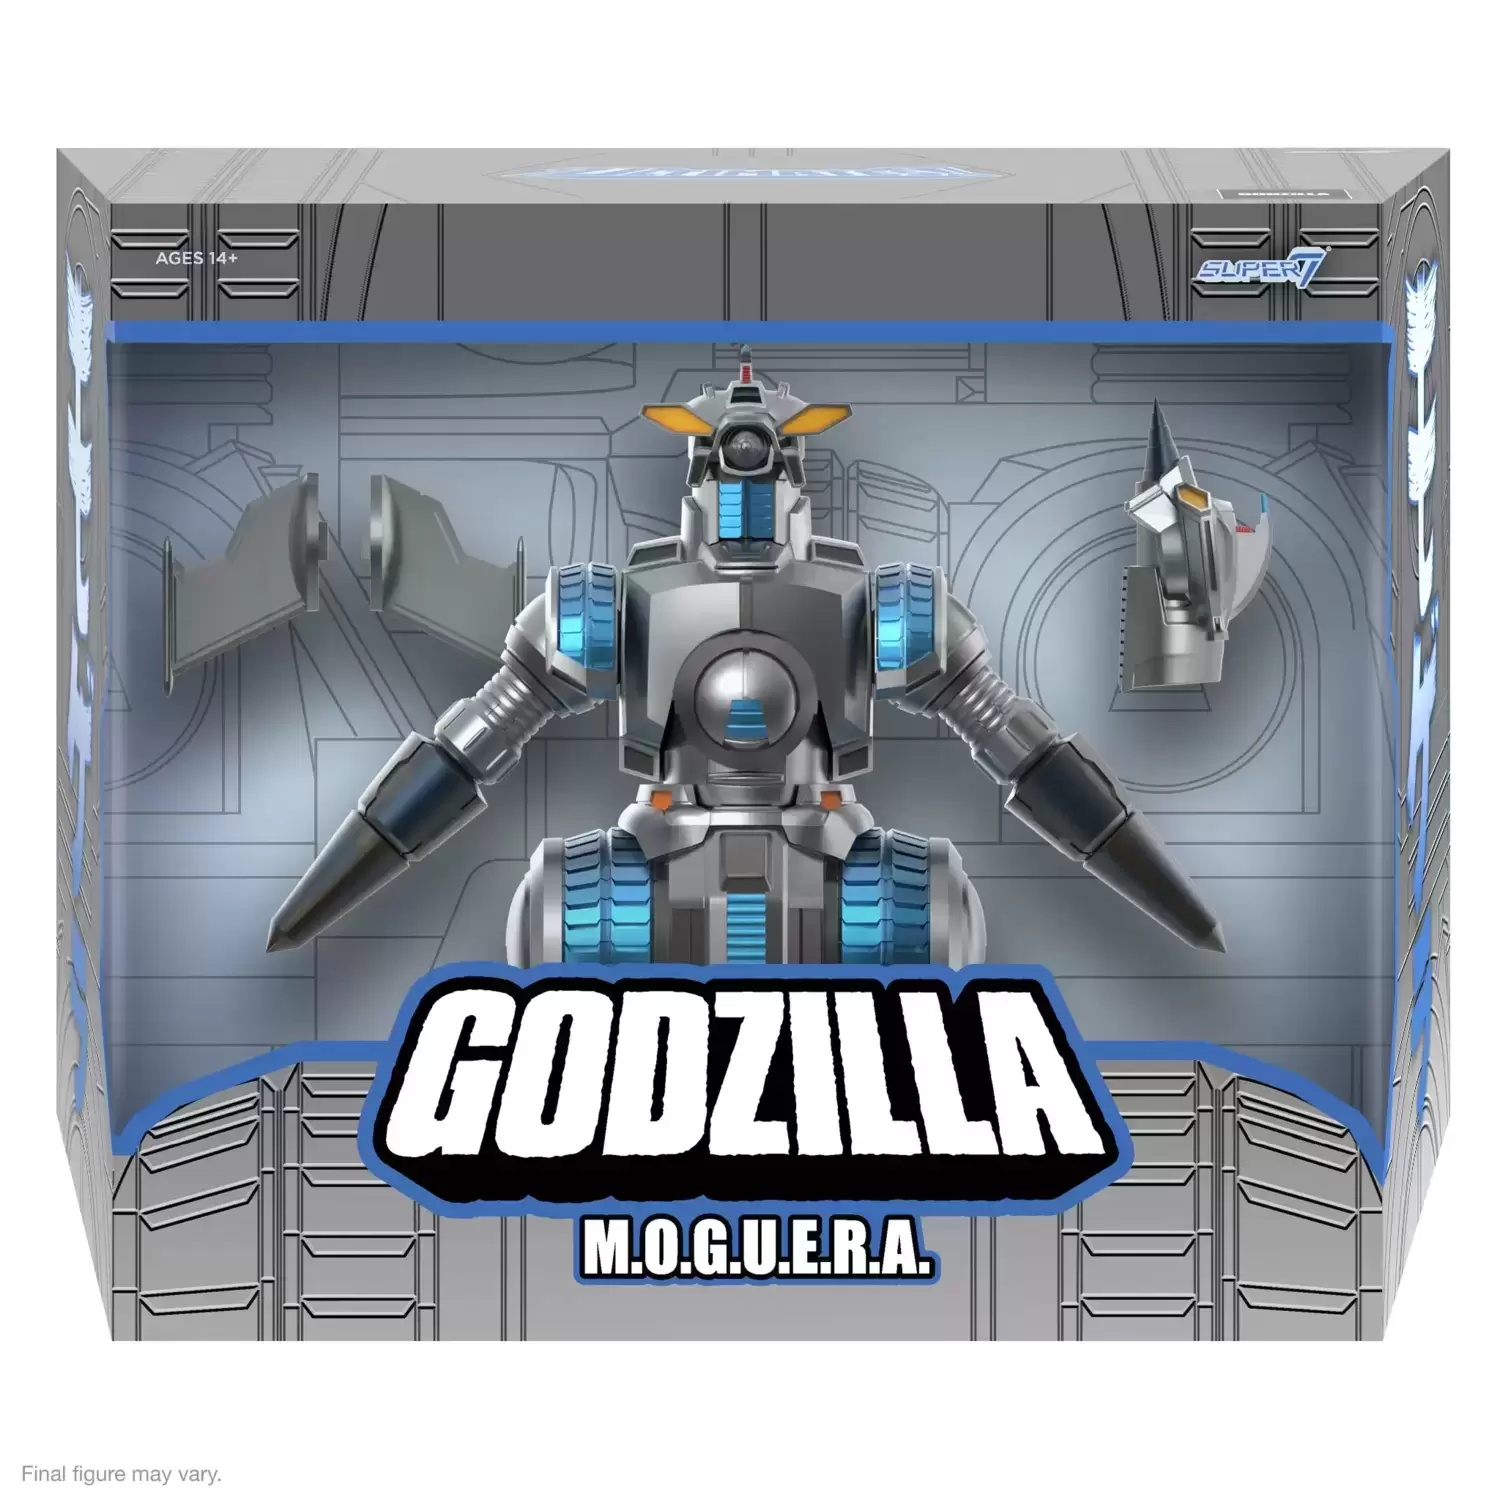 Super7 - ULTIMATES! - Godzilla - M.O.G.U.E.R.A.